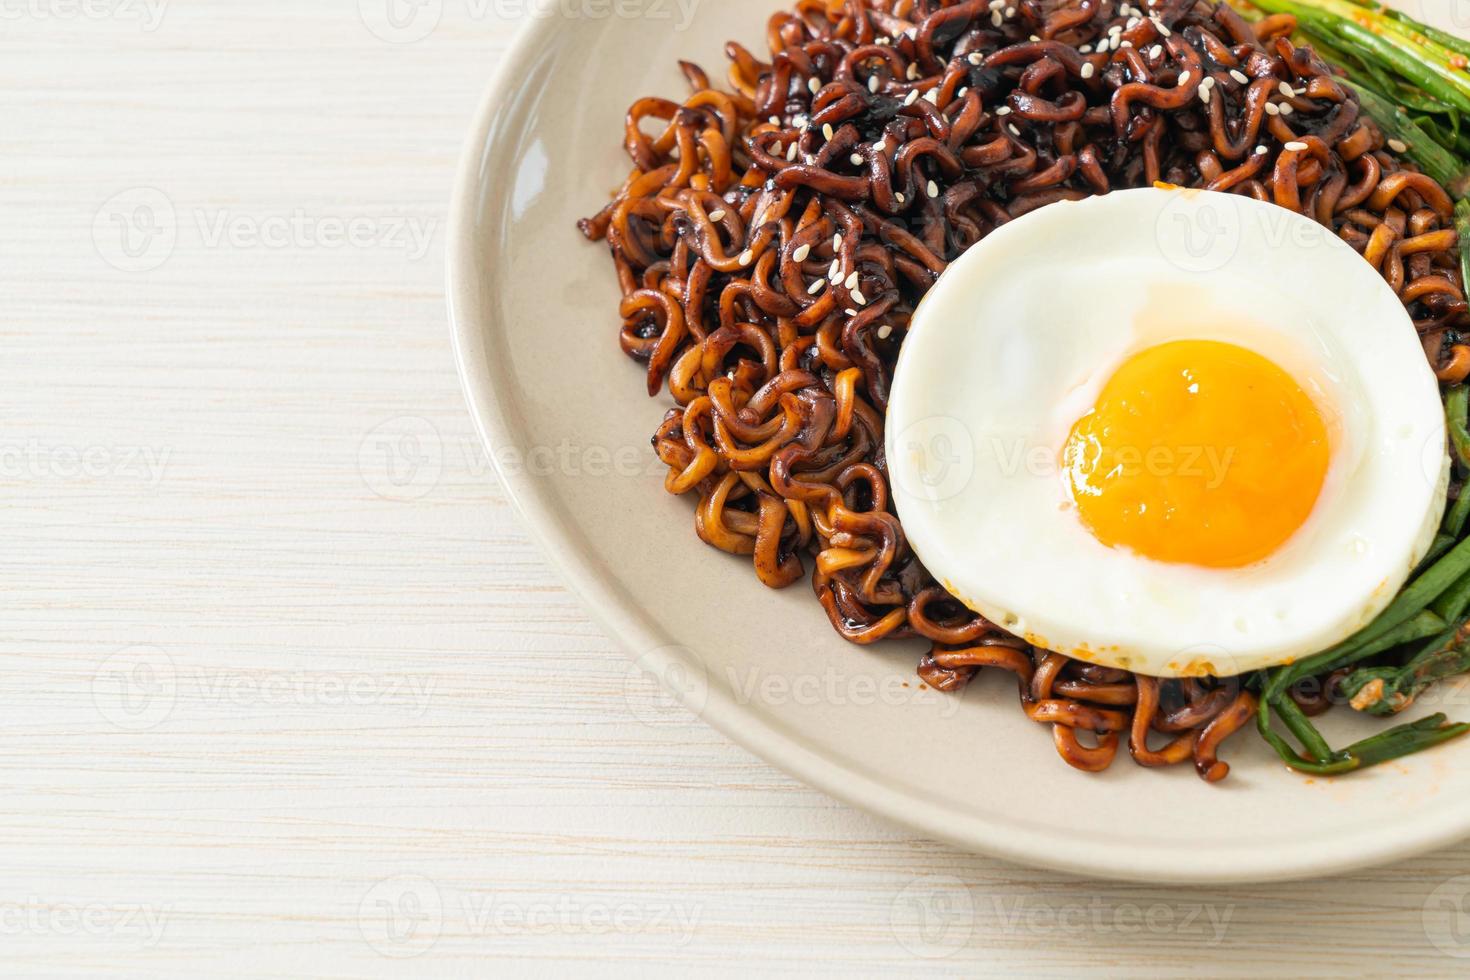 hemlagad torkad koreansk kryddig svart sås snabbnudlar med stekt ägg och kimchi foto